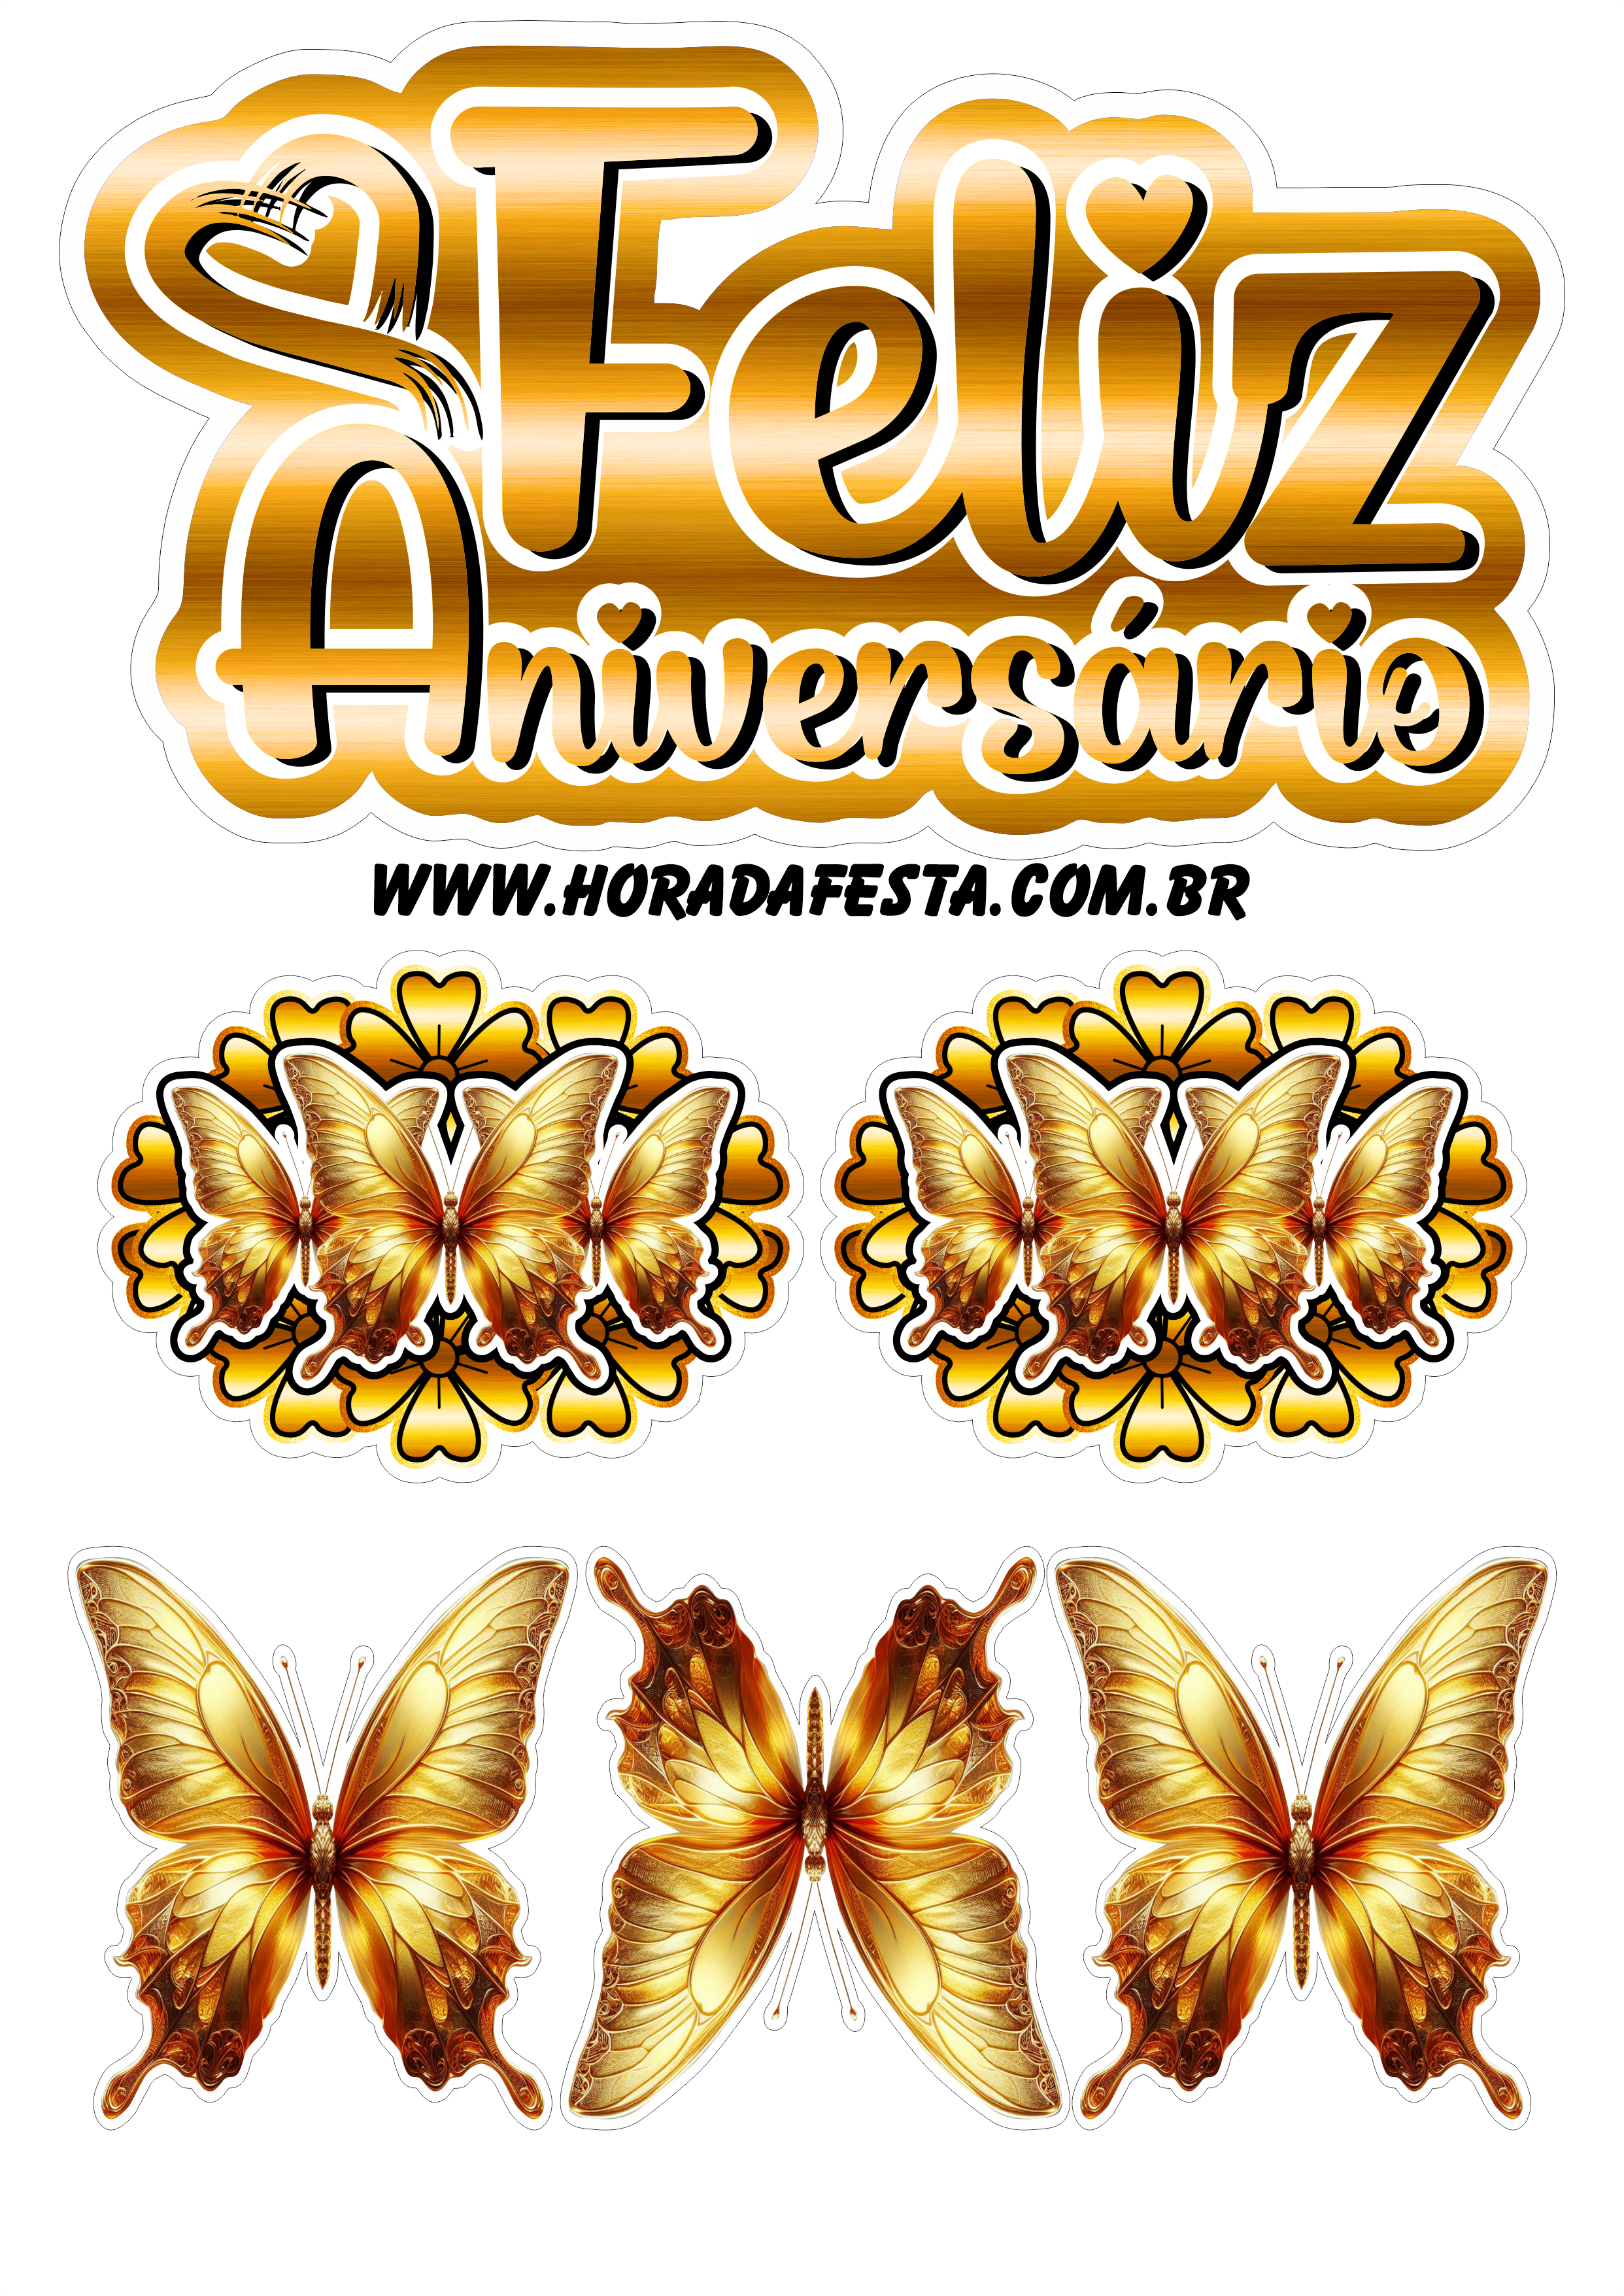 Feliz aniversário topo de bolo com borboletas douradas pronto para imprimir papelaria criativa renda extra com festas recorte png